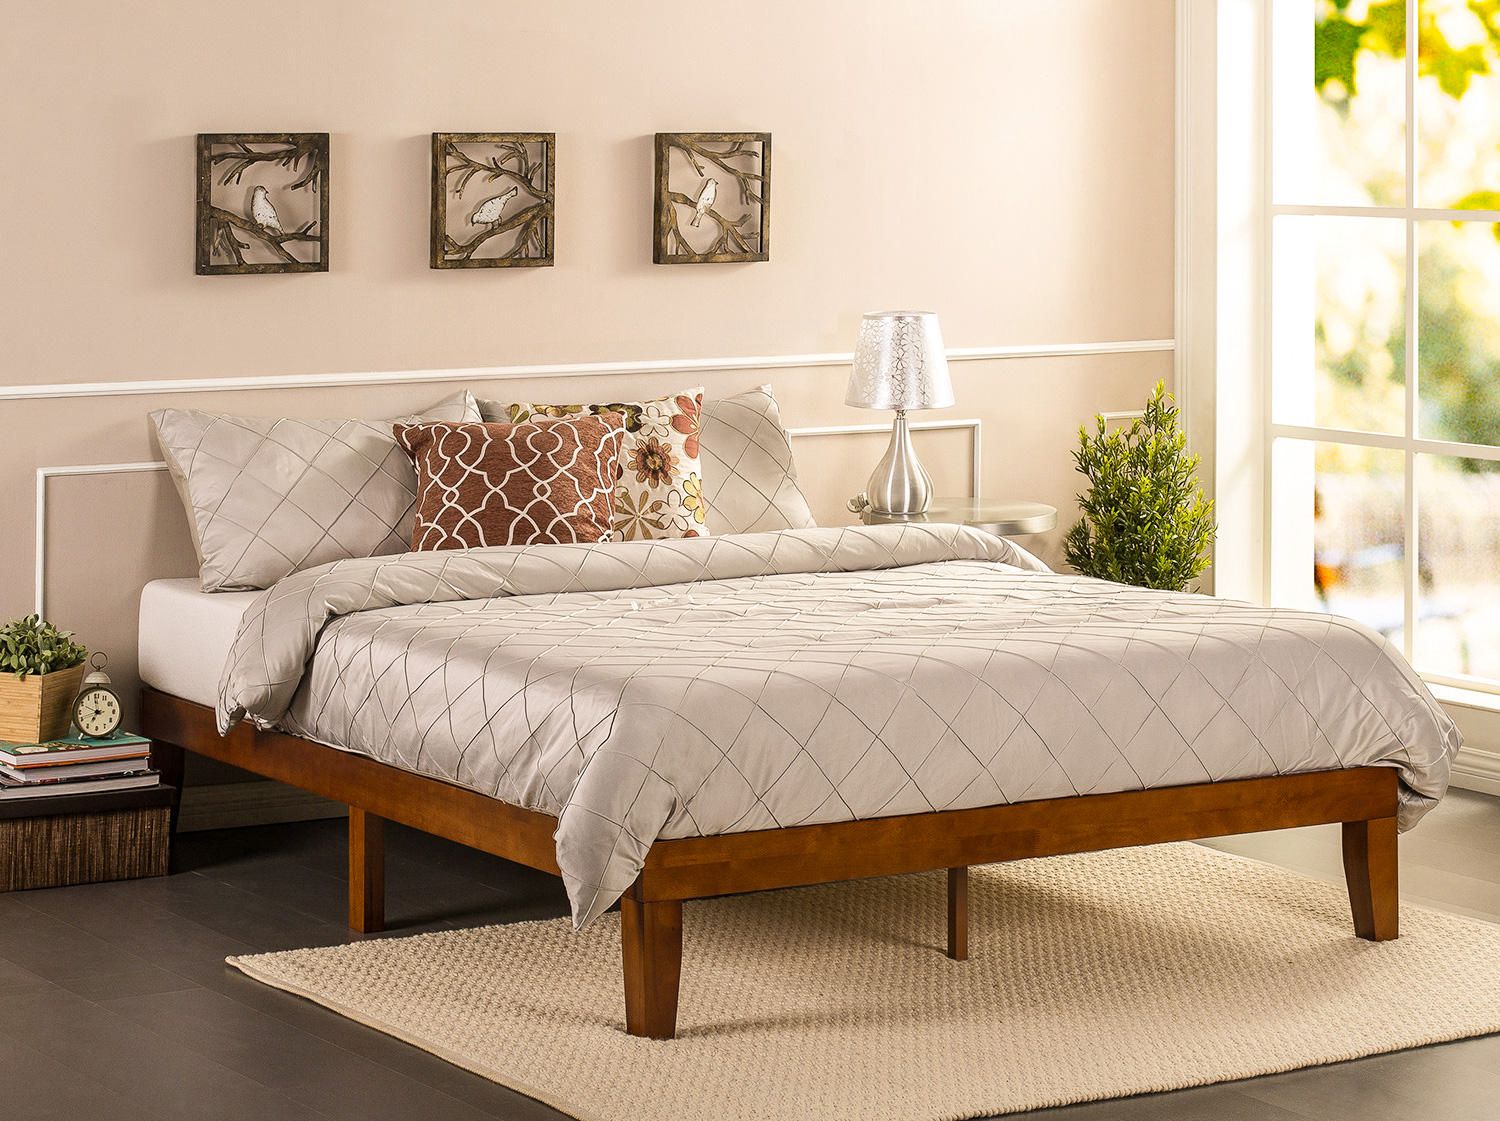 mattress and platform bed set wooden